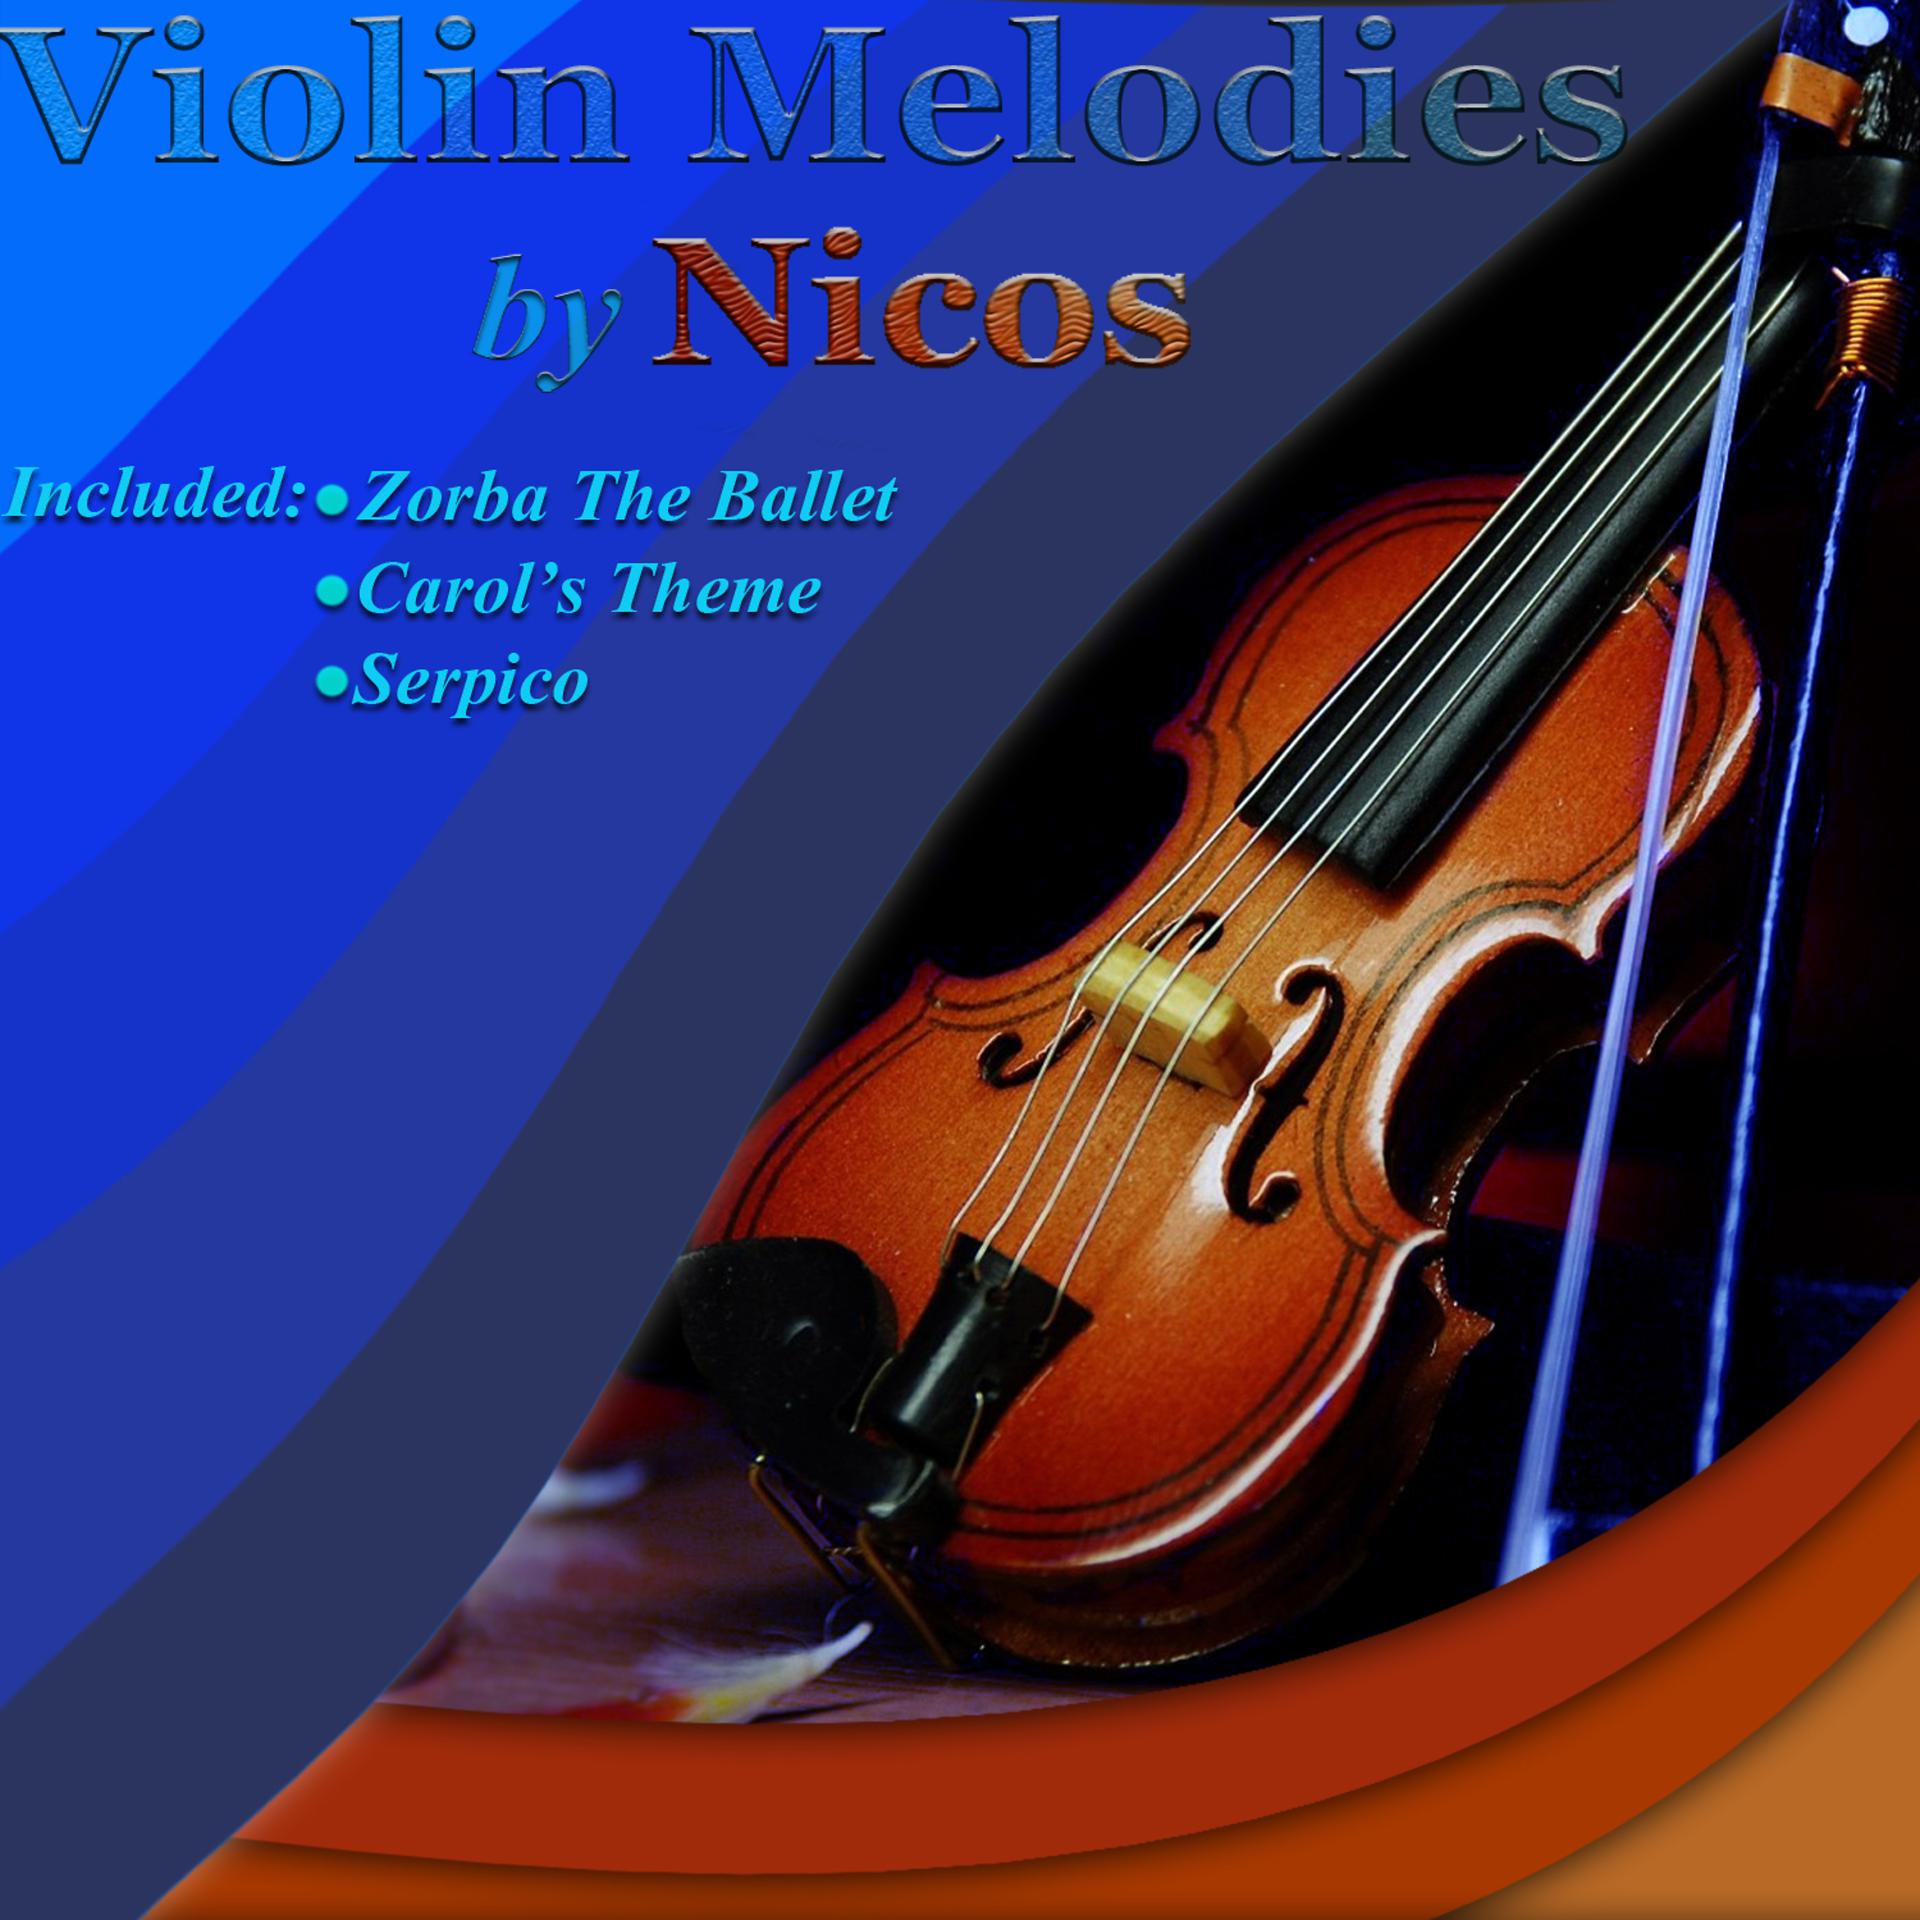 Виолин Мелоди. Arcano Violin альбомы. Скрипка альбом